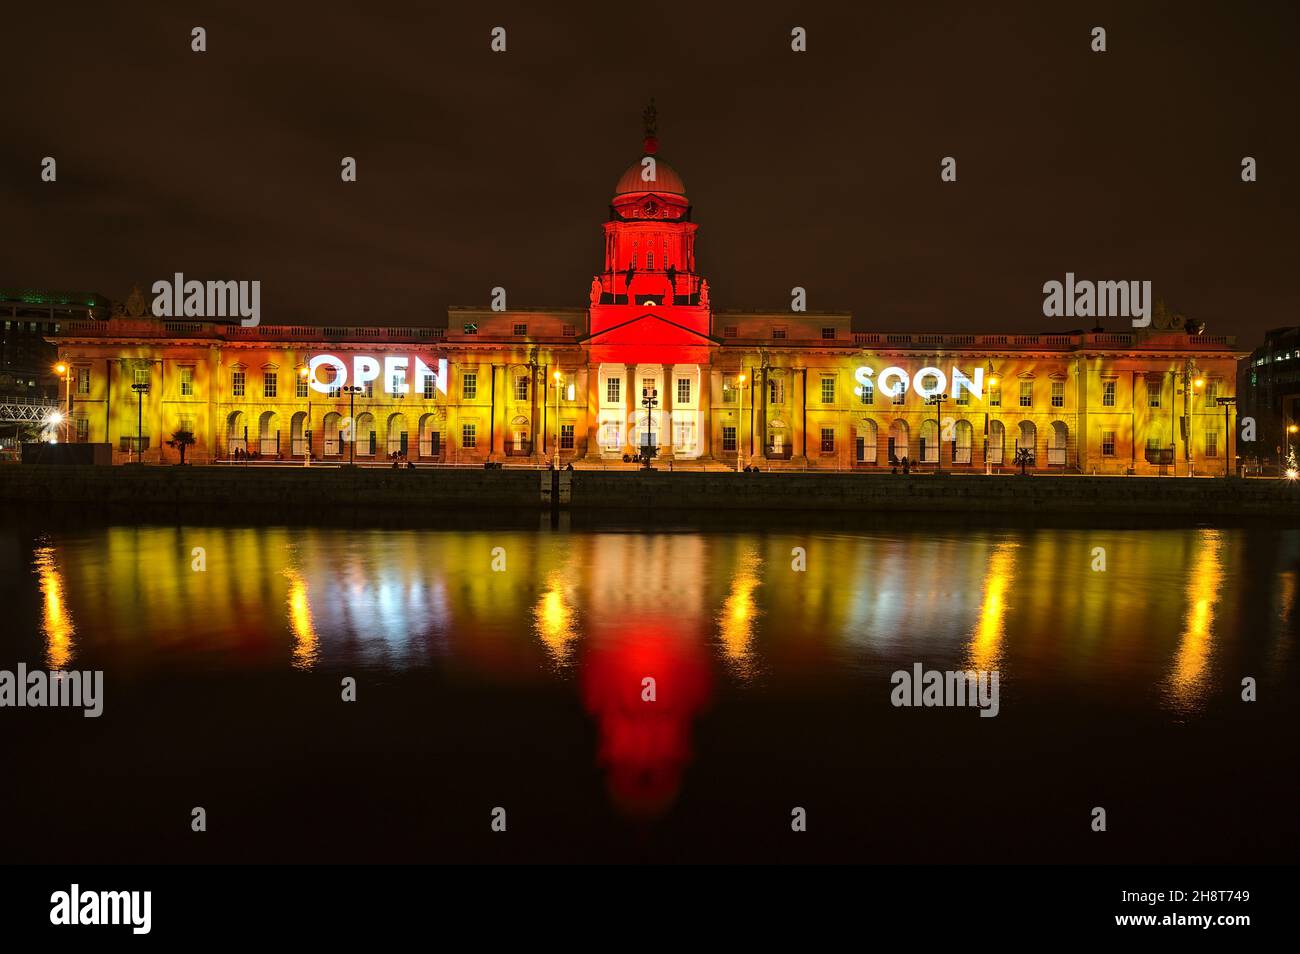 Dublin, Irlande - novembre 13.2021: Belle vue grand angle de la maison personnalisée décorée pour Noël dans les couleurs jaune et rouge avec "Open Soon" Banque D'Images